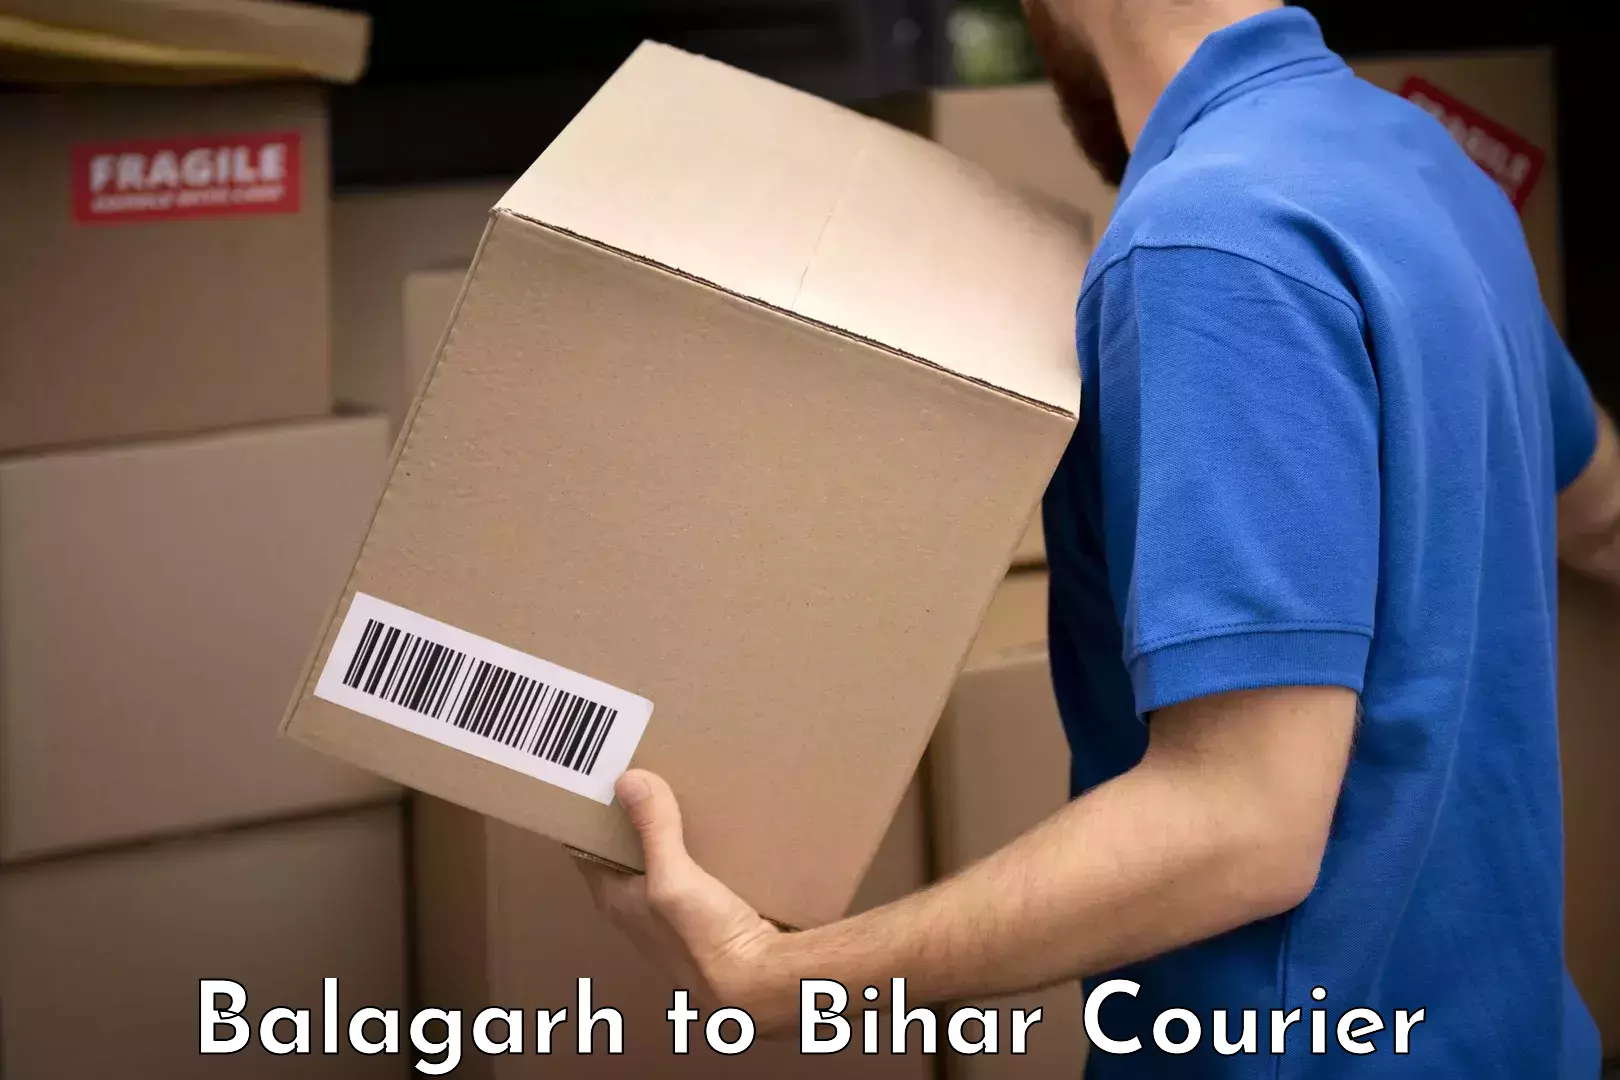 Baggage transport network Balagarh to Saharsa